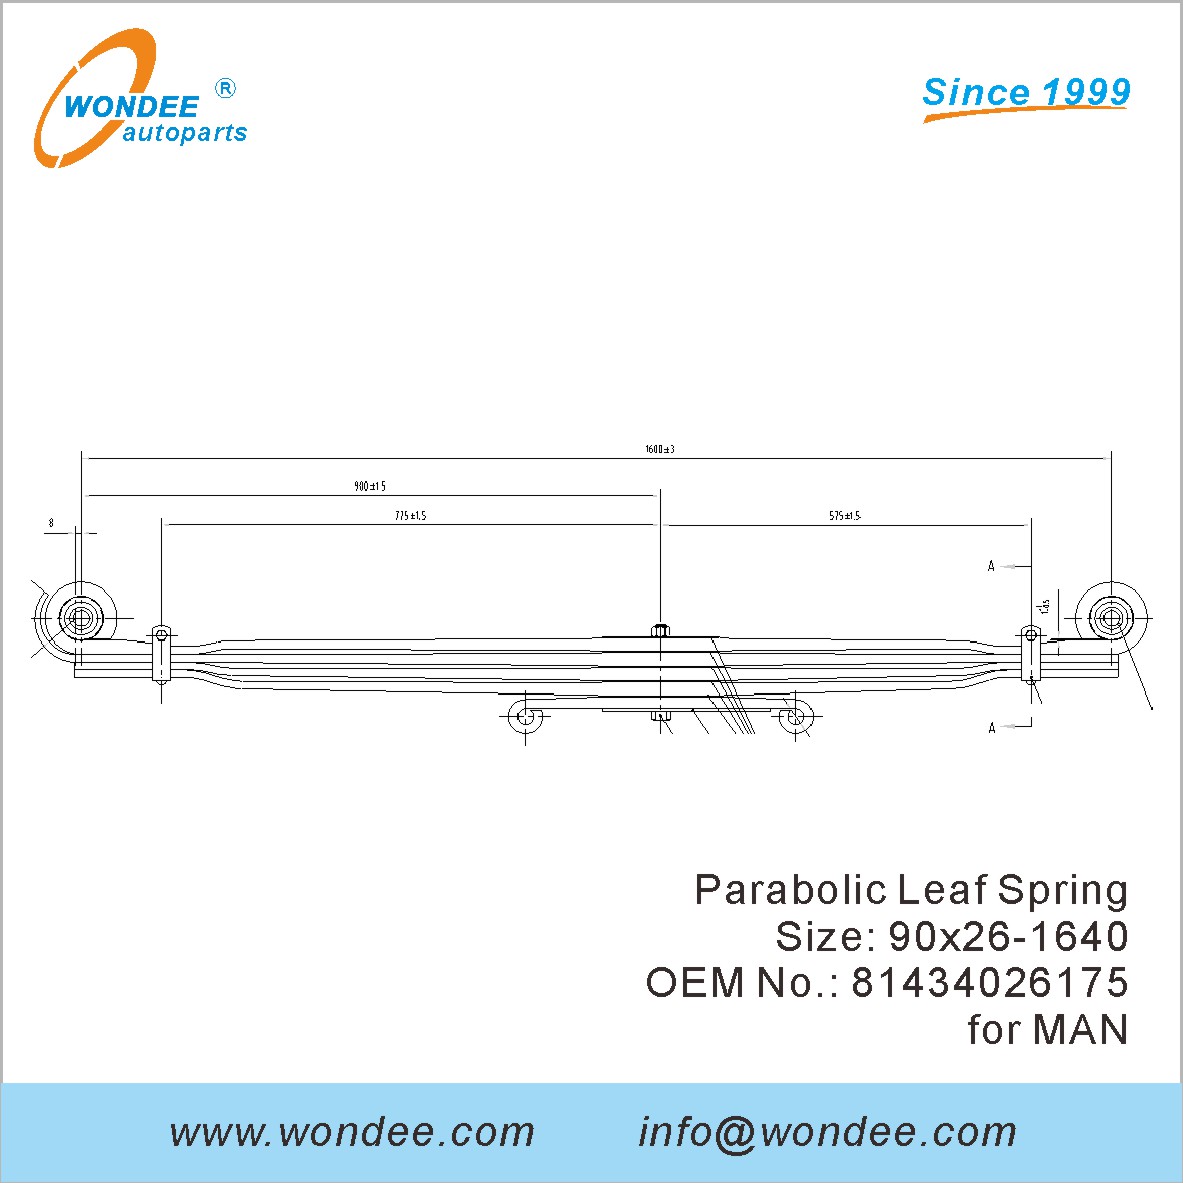 WONDEE heavy duty parabolic Leaf Spring OEM 81434026175 for MAN